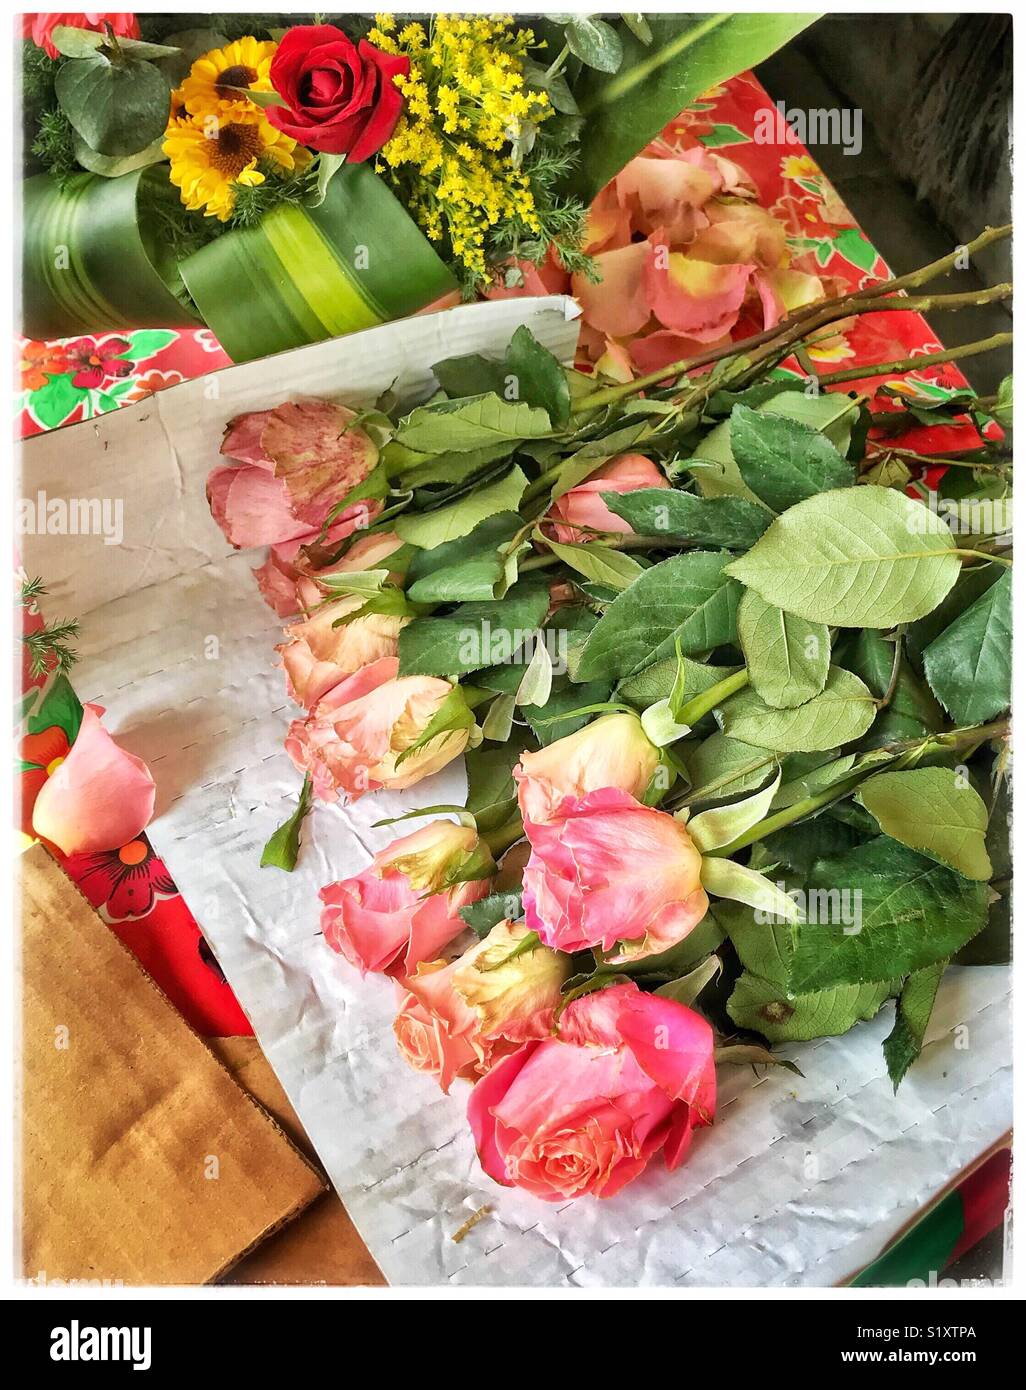 Di un bel colore rosa con gambo lungo le rose sono pronti per essere avvolto per un cliente in un negozio di fiori a Guadalajara, la città delle rose. Foto Stock